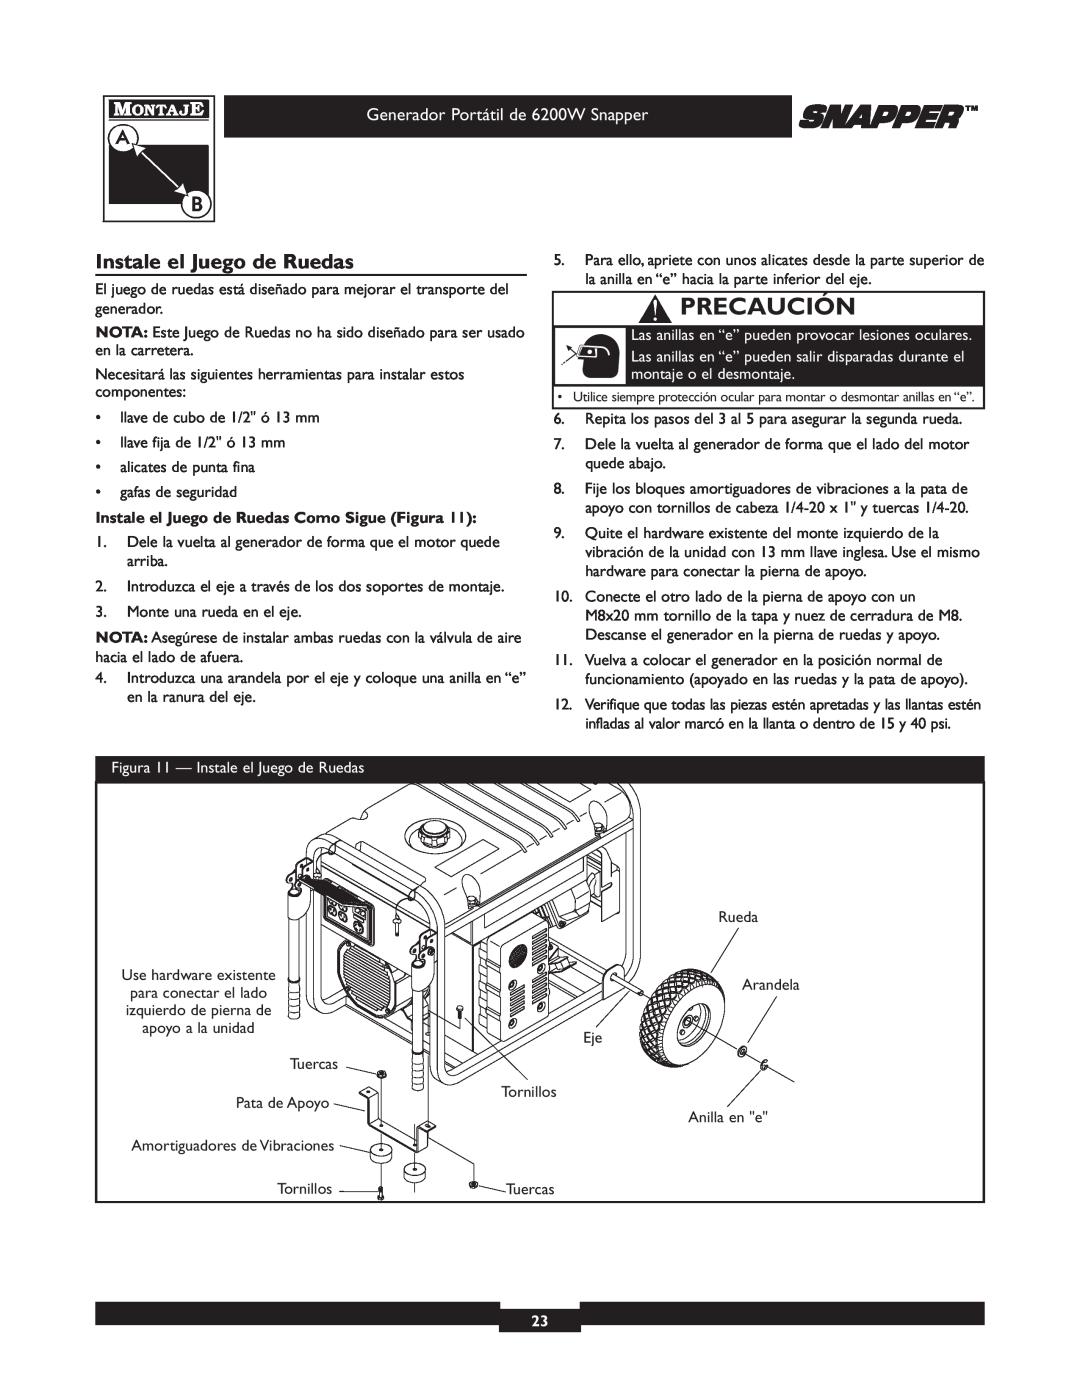 Snapper 30216 manual Instale el Juego de Ruedas, Precaución, Generador Portátil de 6200W Snapper 